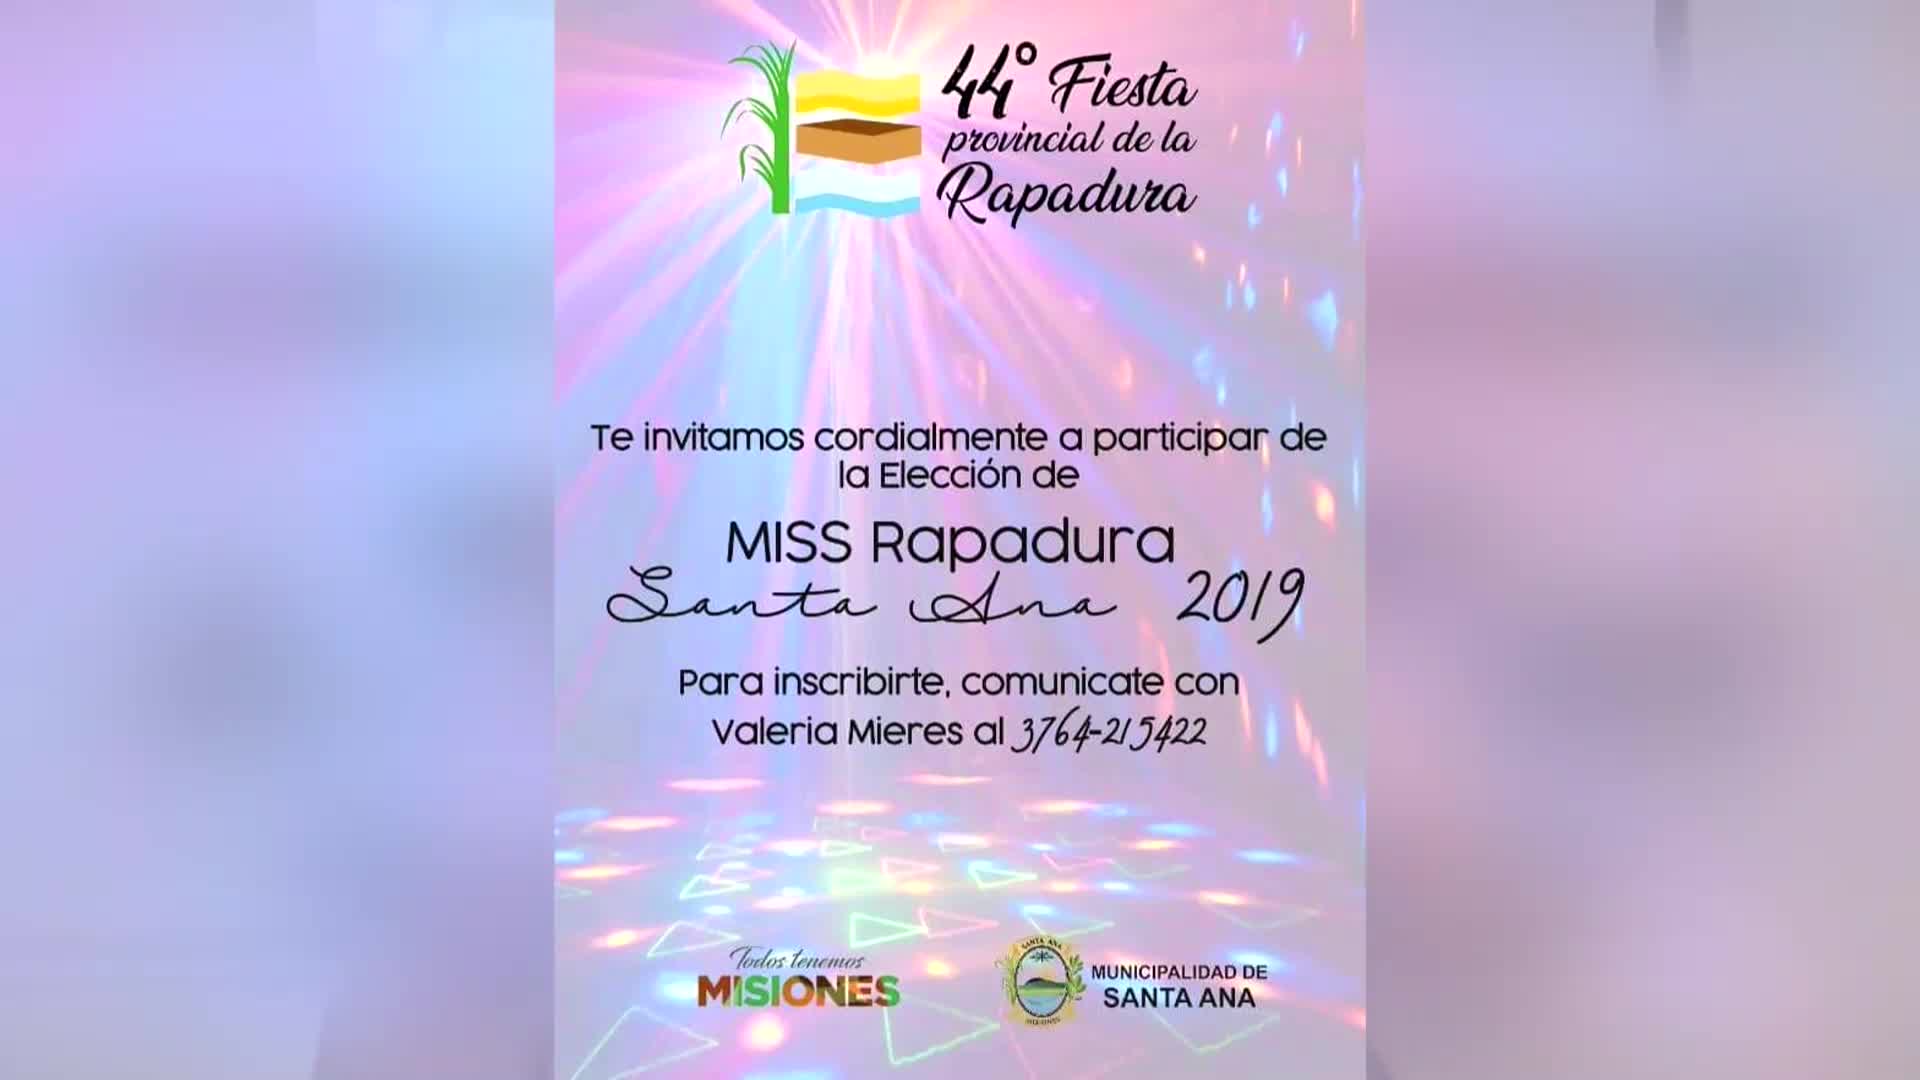 La Fiesta de la Rapadura se realizará en Santa Ana